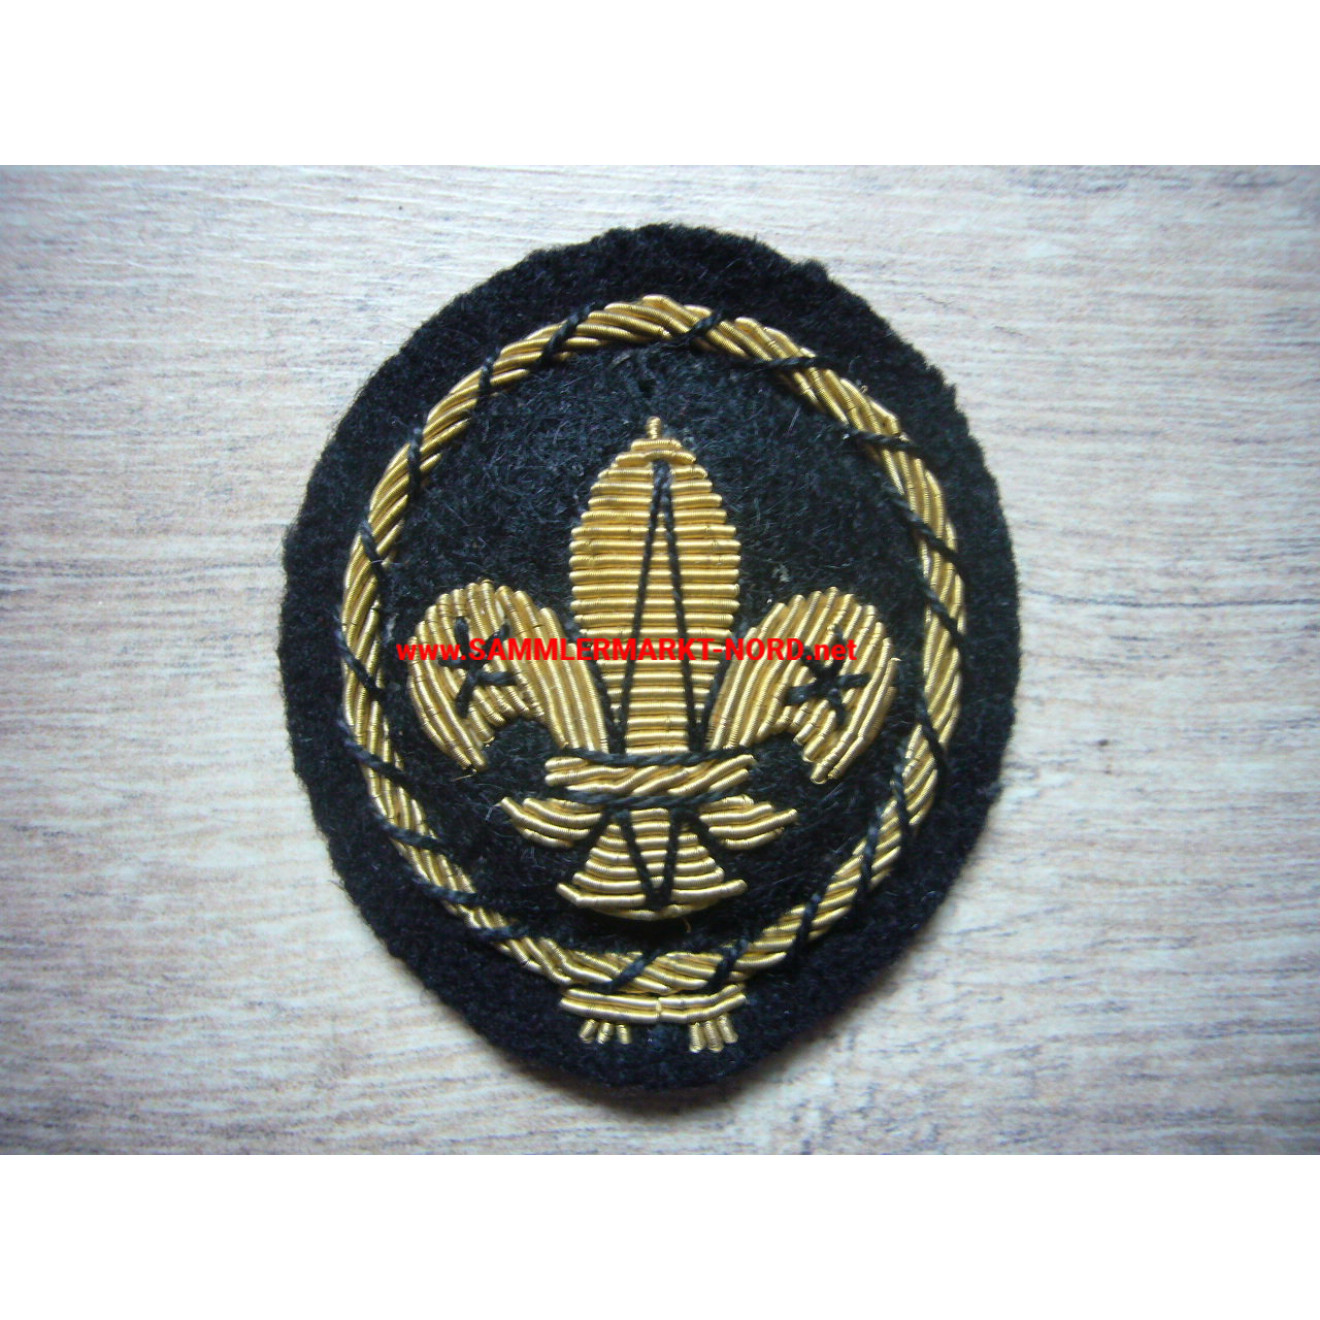 Great Britain - Sea Scouts - Cap Badge